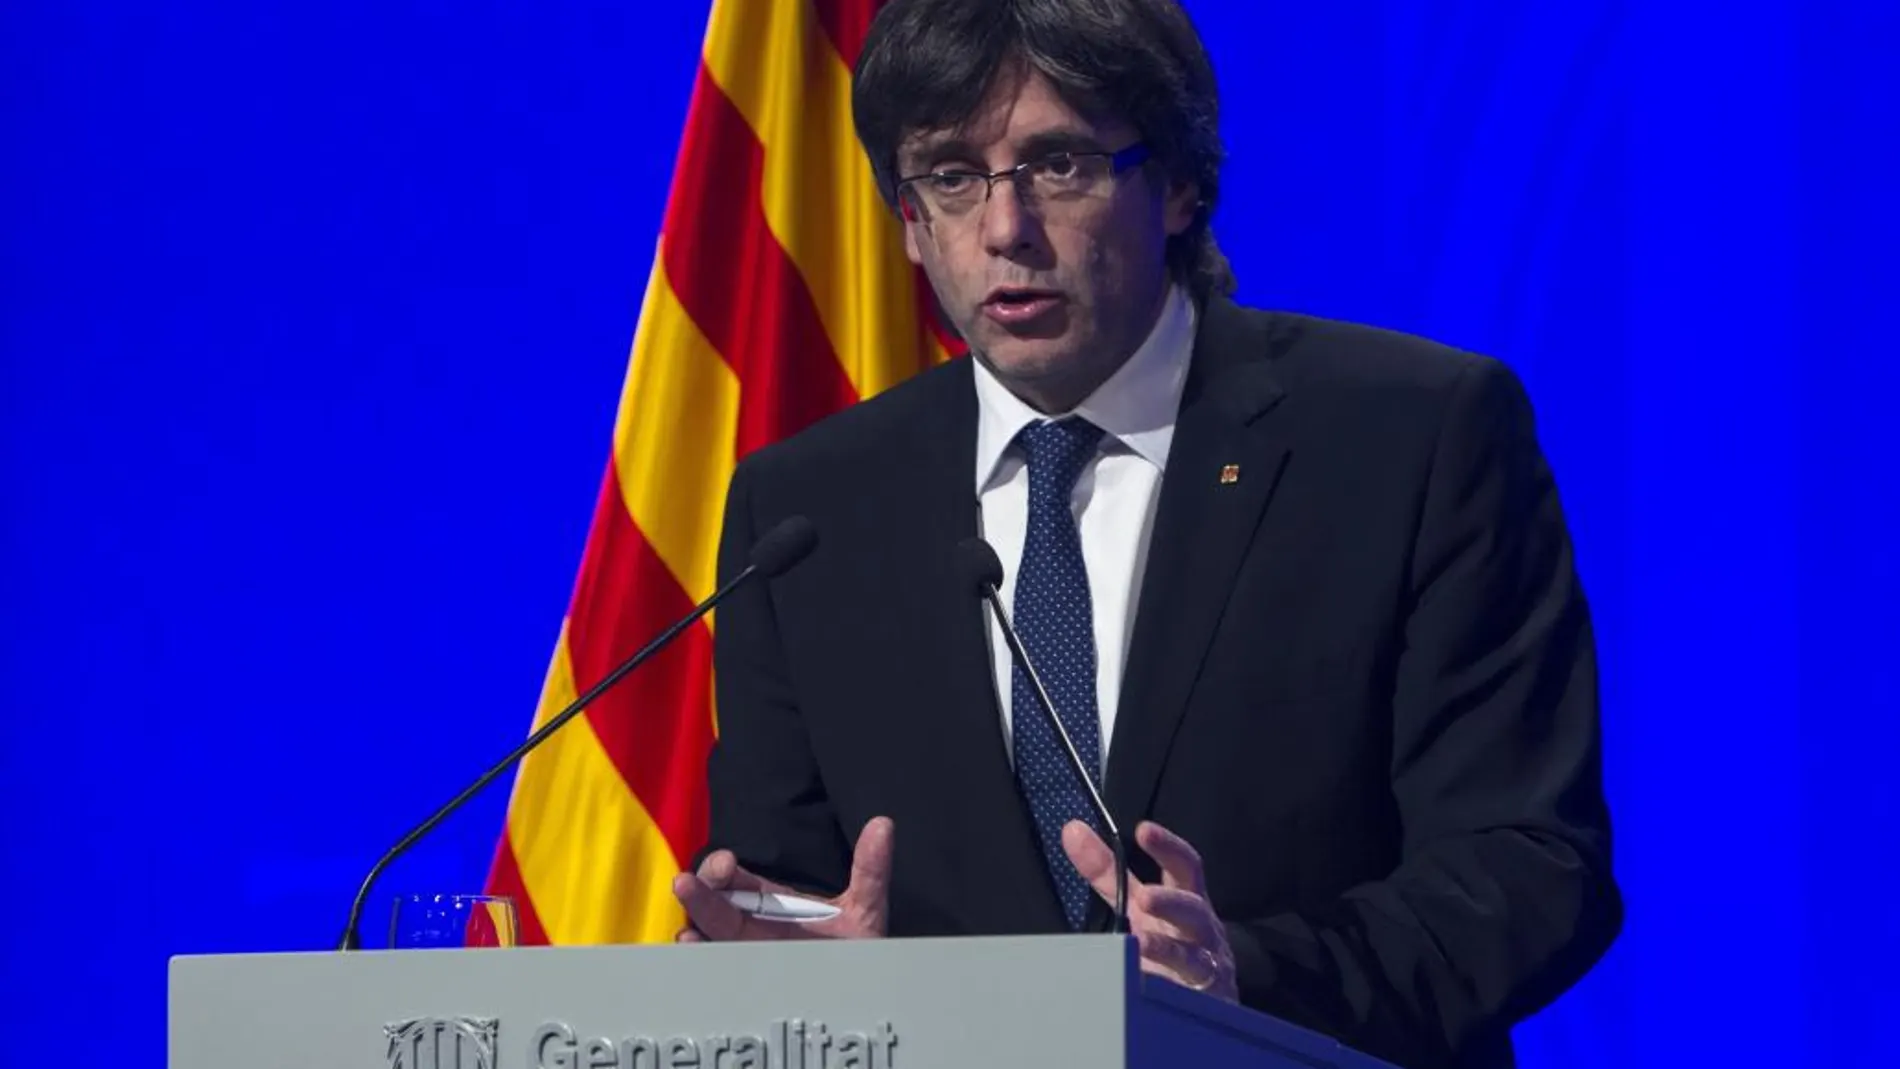 El presidente de la Generalitat, Carles Puigdemont, atiende a los medios de comunicación después de presidir la cumbre política y social en defensa de la ley de emergencia social frente al recurso del Gobierno central